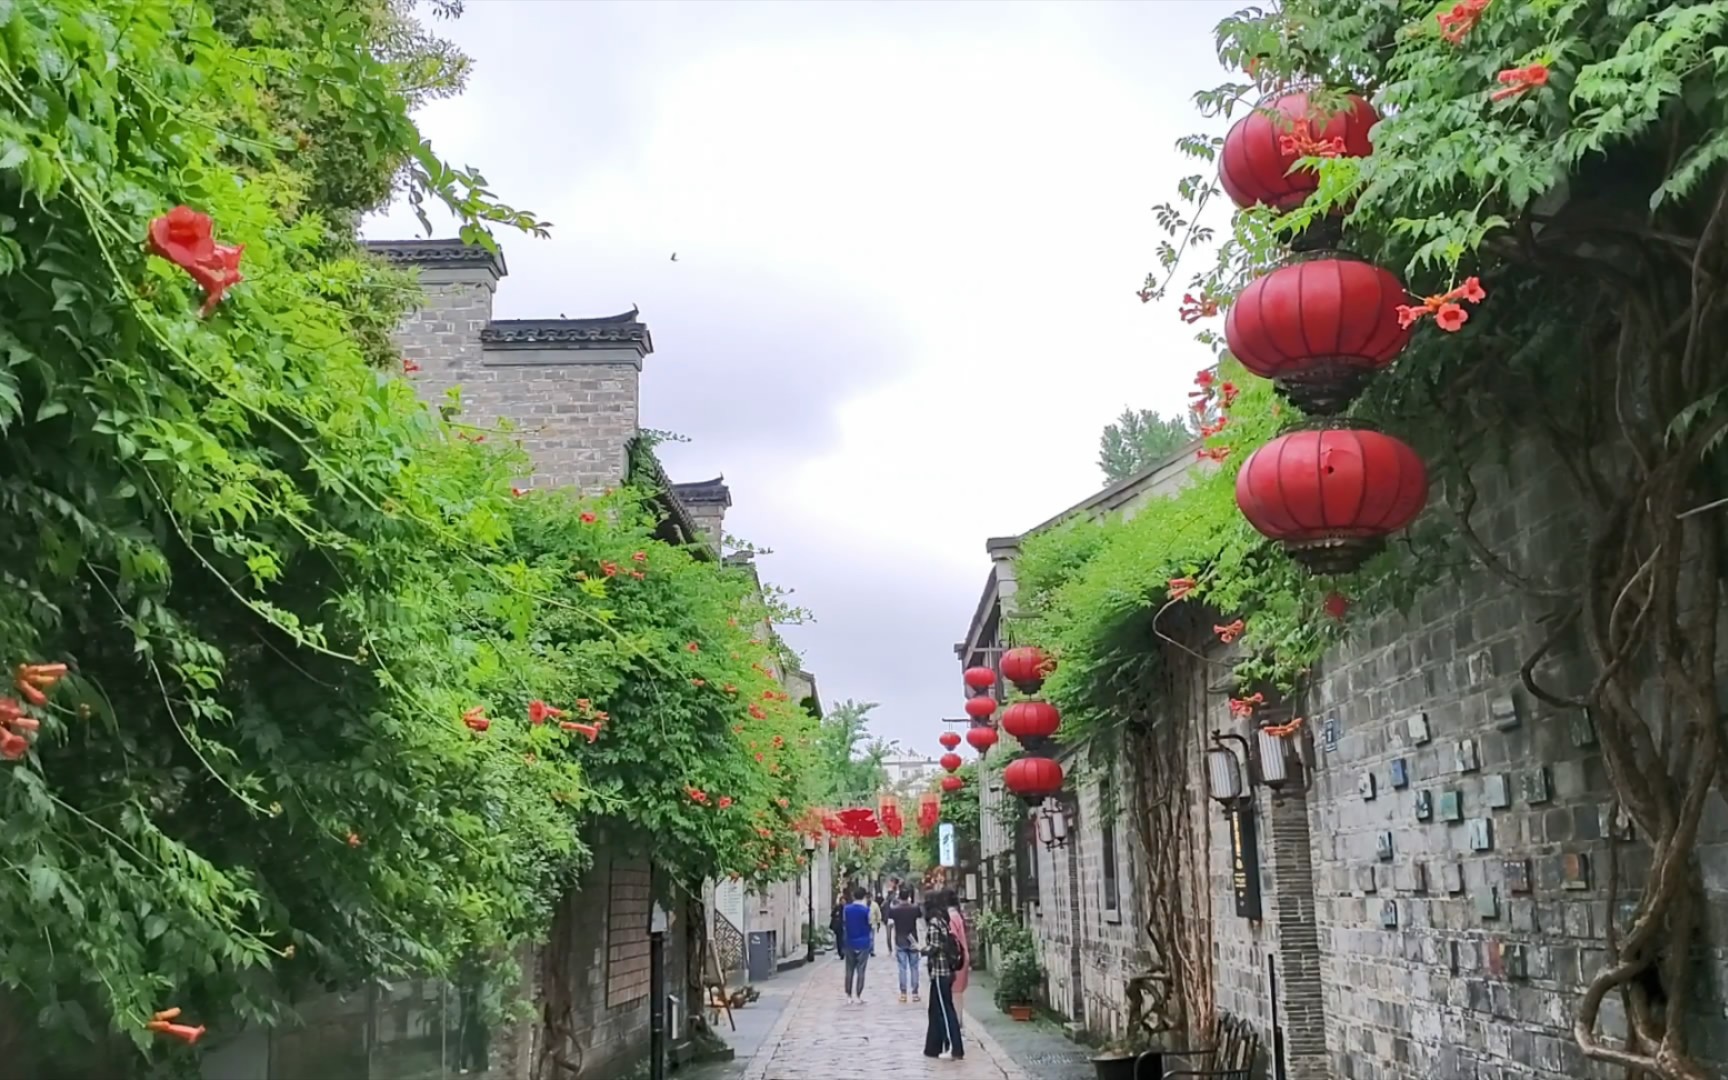 南京,老门东,穿过古街巷,曲径通幽,感受岁月的静美时光